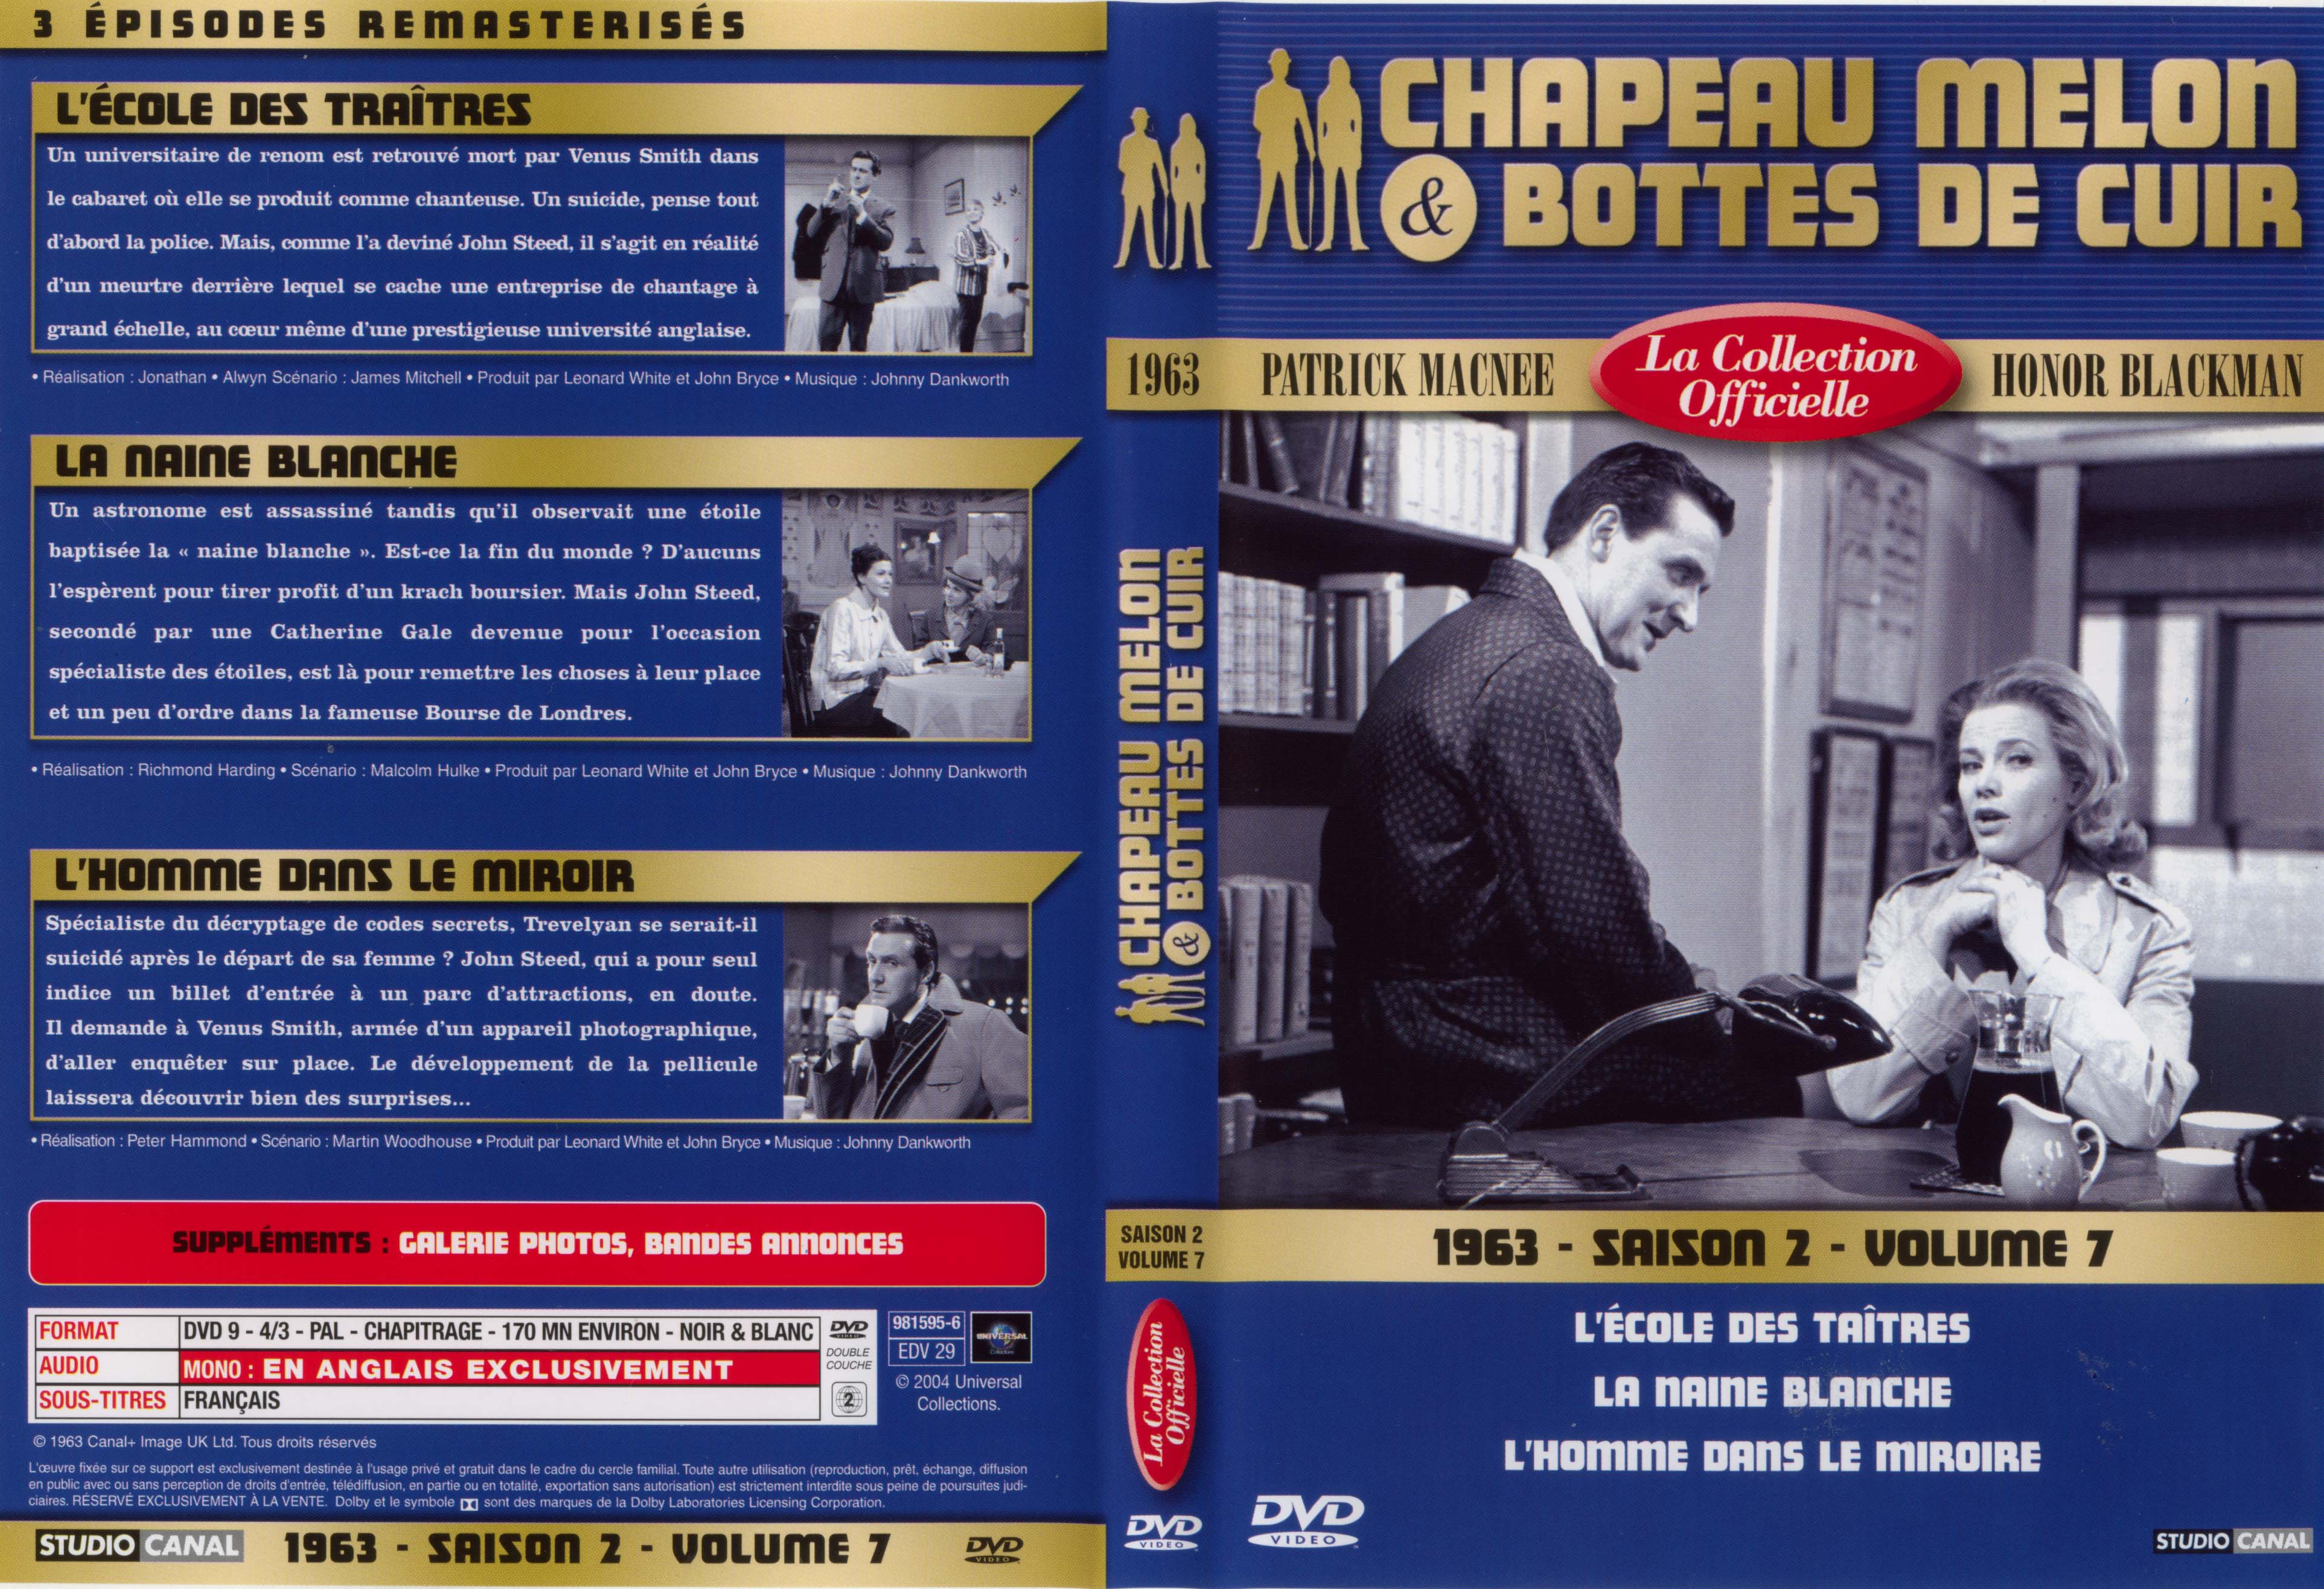 Jaquette DVD Chapeau melon et bottes de cuir 1963 saison 2 vol 7